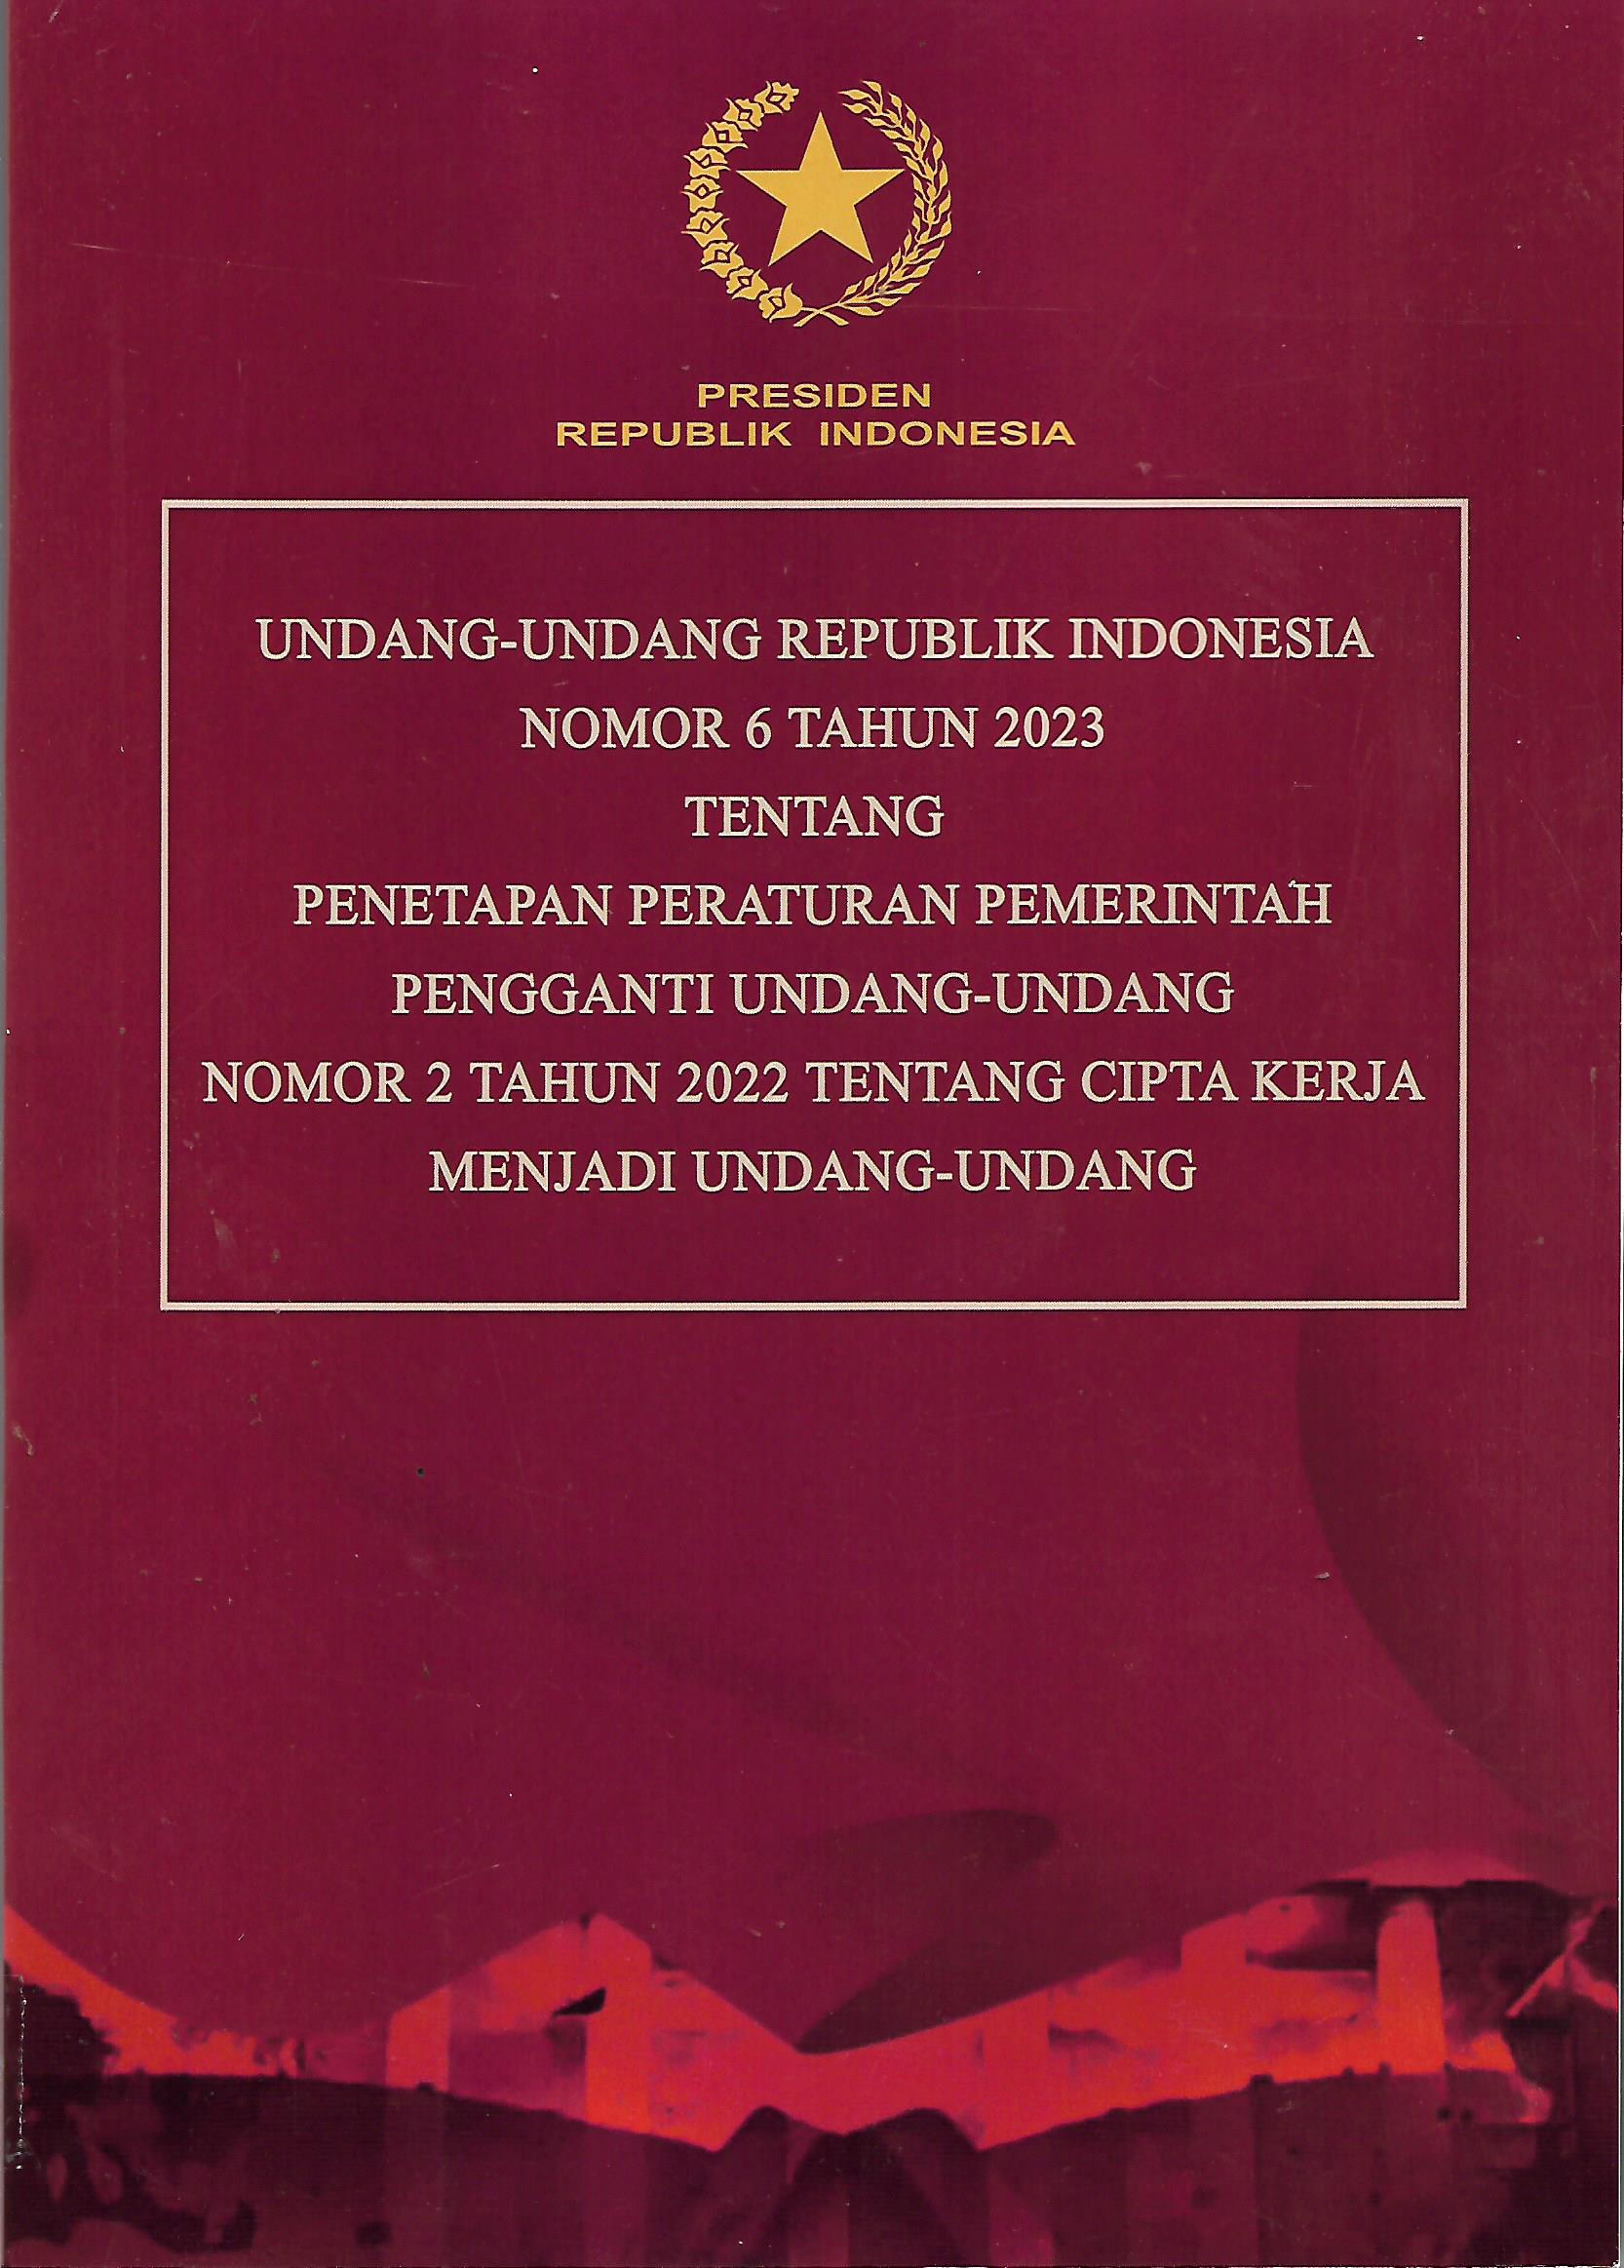 UNDANG-UNDANG REPUBLIK INDONESIA NOMOR 6 TAHUN 2023 TENTANG PENETAPAN PERATURAN PEMERINTAH PENGGANTI UNDANG-UNDANG NOMOR 2 TAHUN 2022 TENTANG CIPTA KERJA MENJADI UNDANG-UNDANG